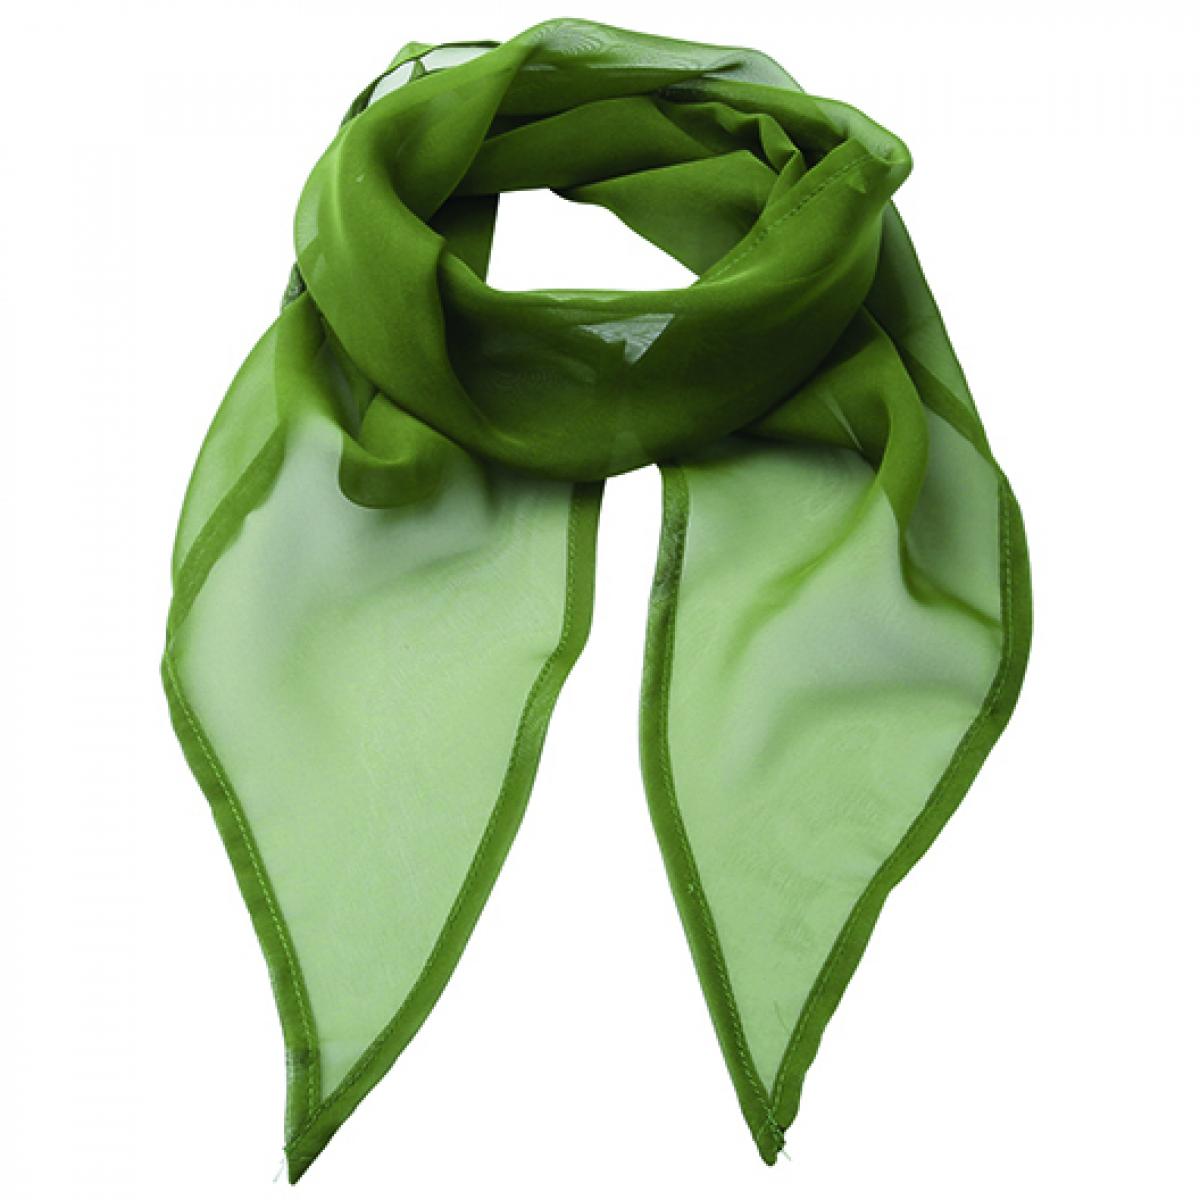 Hersteller: Premier Workwear Herstellernummer: PR740 Artikelbezeichnung: Schal Women`s Colour Chiffon Scarf - 98 x 16,5 cm Farbe: Oasis Green (ca. Pantone 371 )